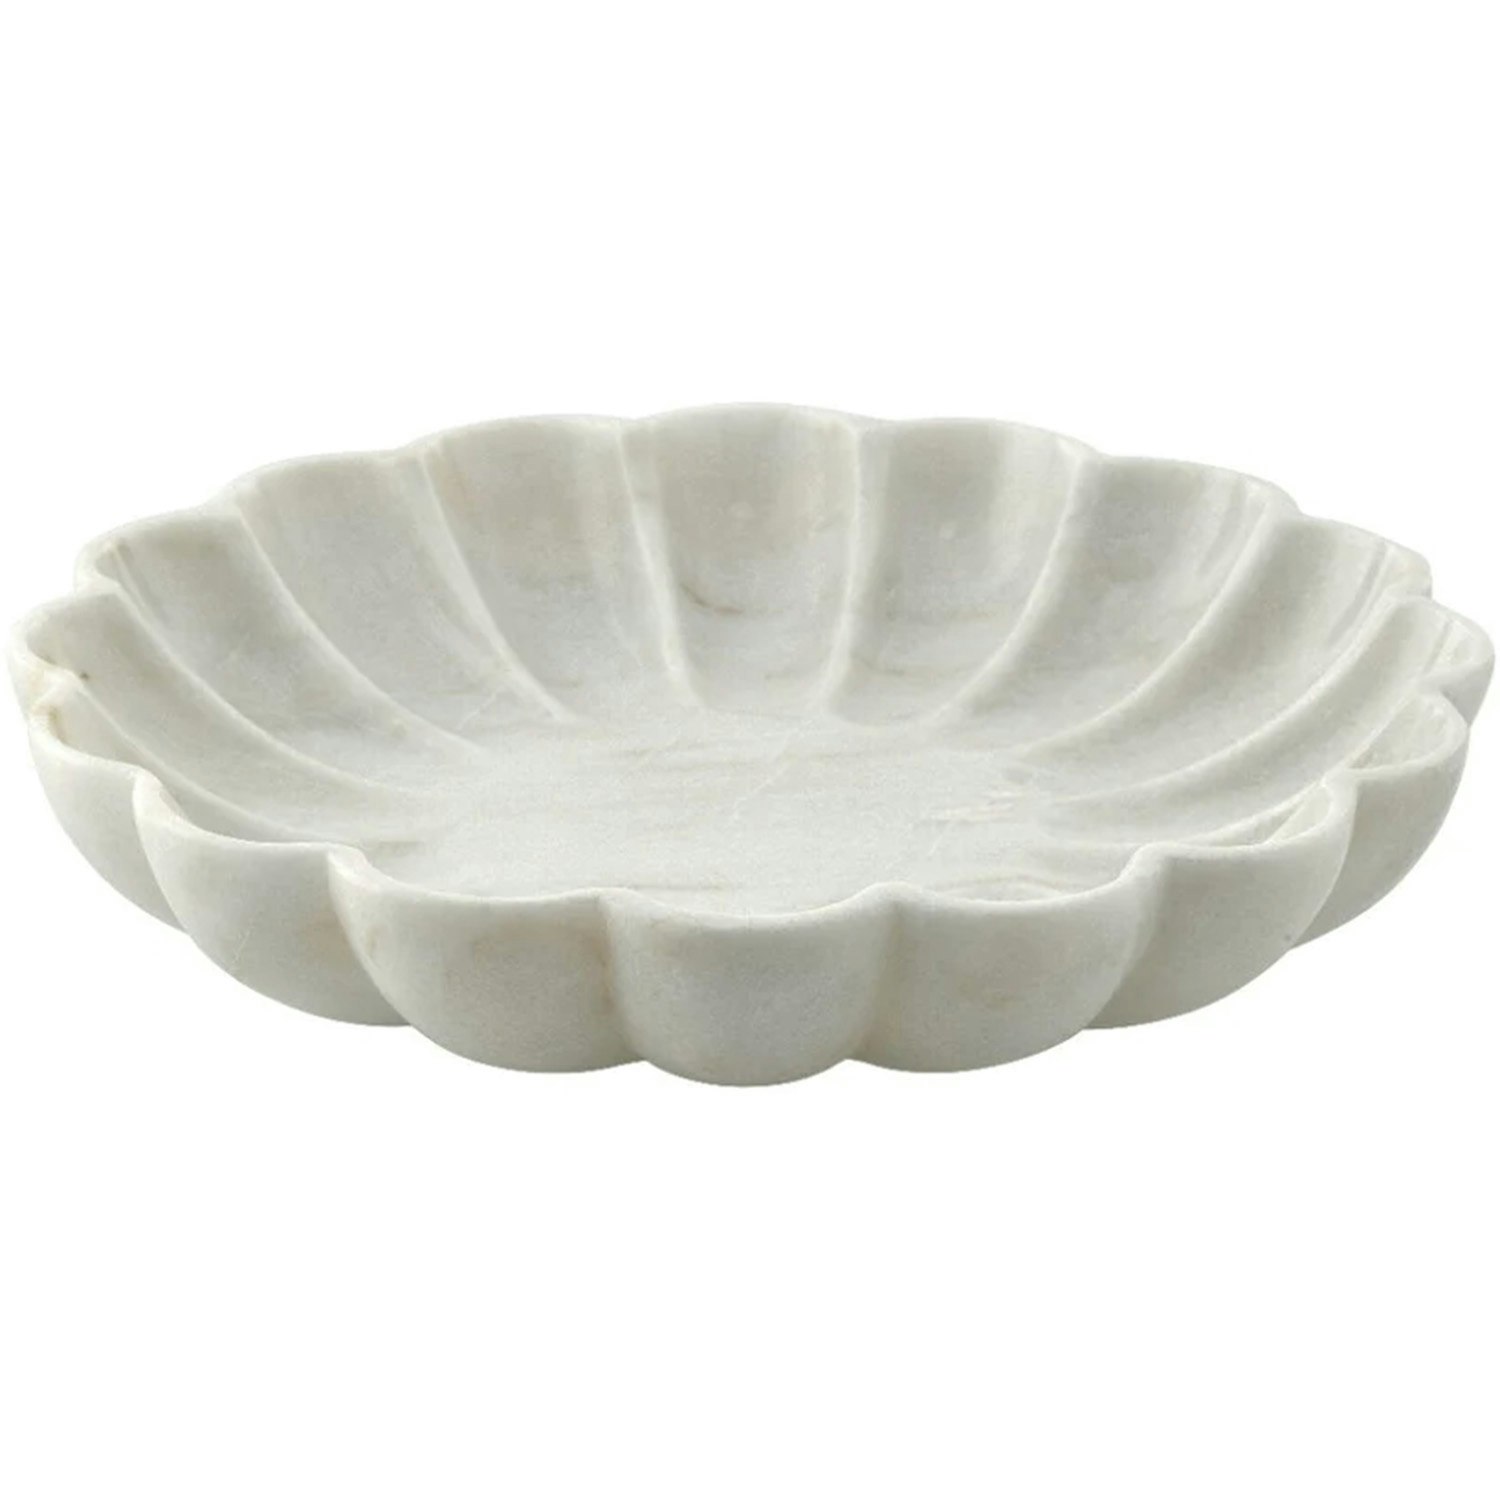 https://royaldesign.com/image/2/lene-bjerre-ellia-bowl-30-cm-linen-4